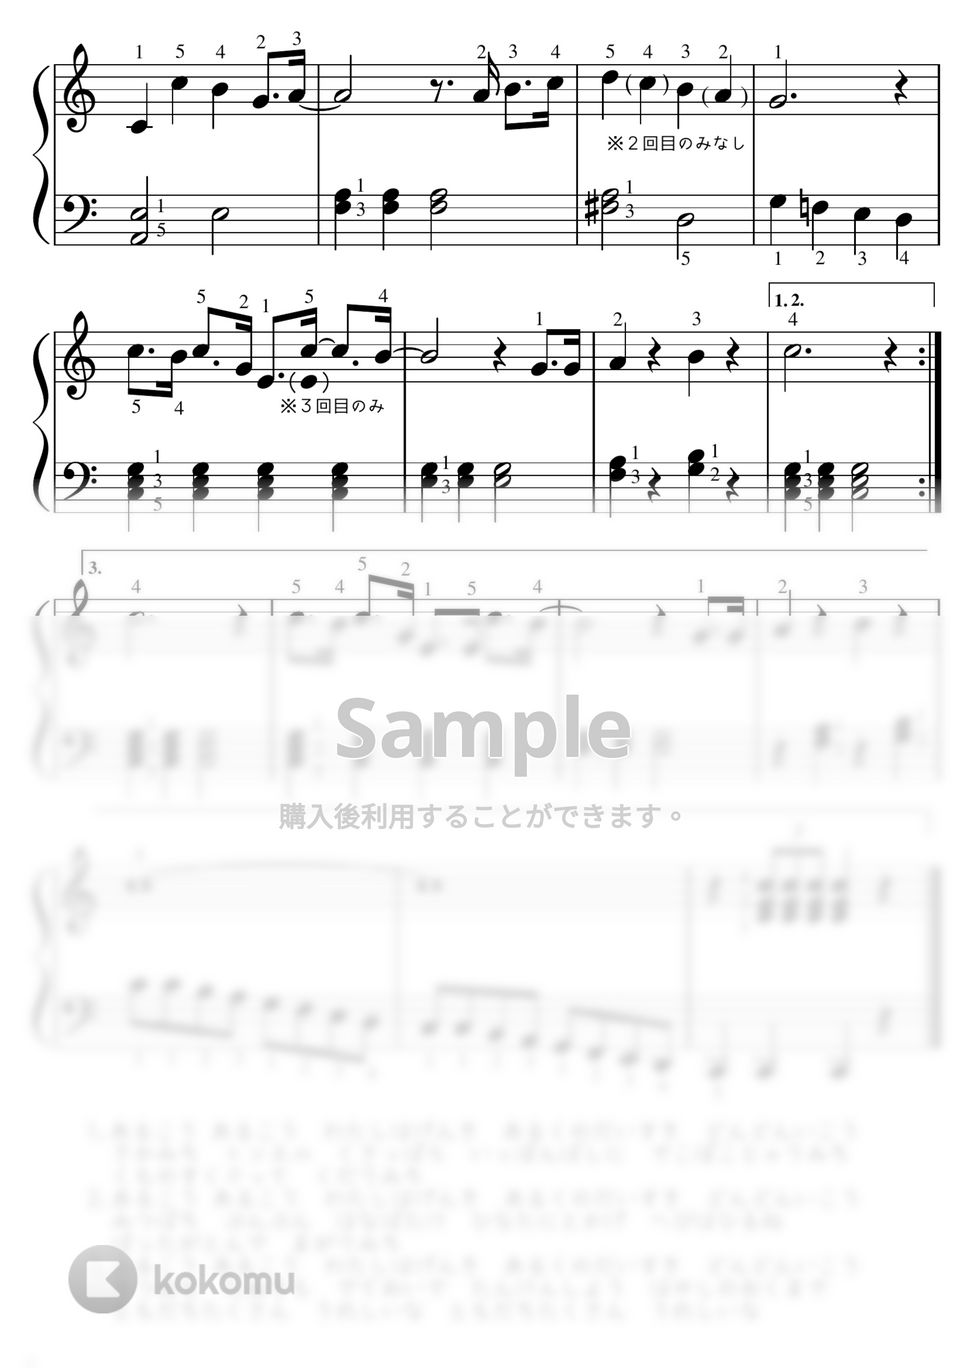 となりのトトロ - 【ピアノ初級】さんぽ/となりのトトロ by ピアノのせんせいの楽譜集